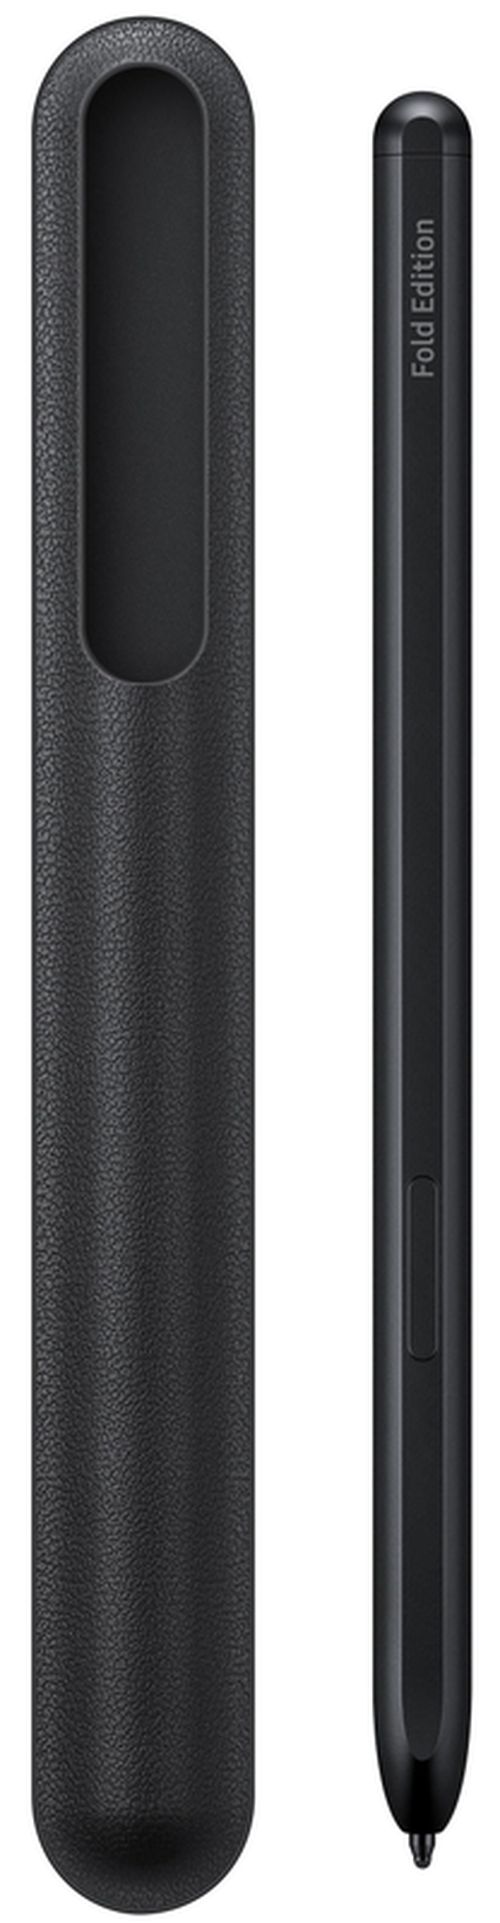 купить Аксессуар для моб. устройства Samsung EJ-PF926 S Pen Q2 Black в Кишинёве 